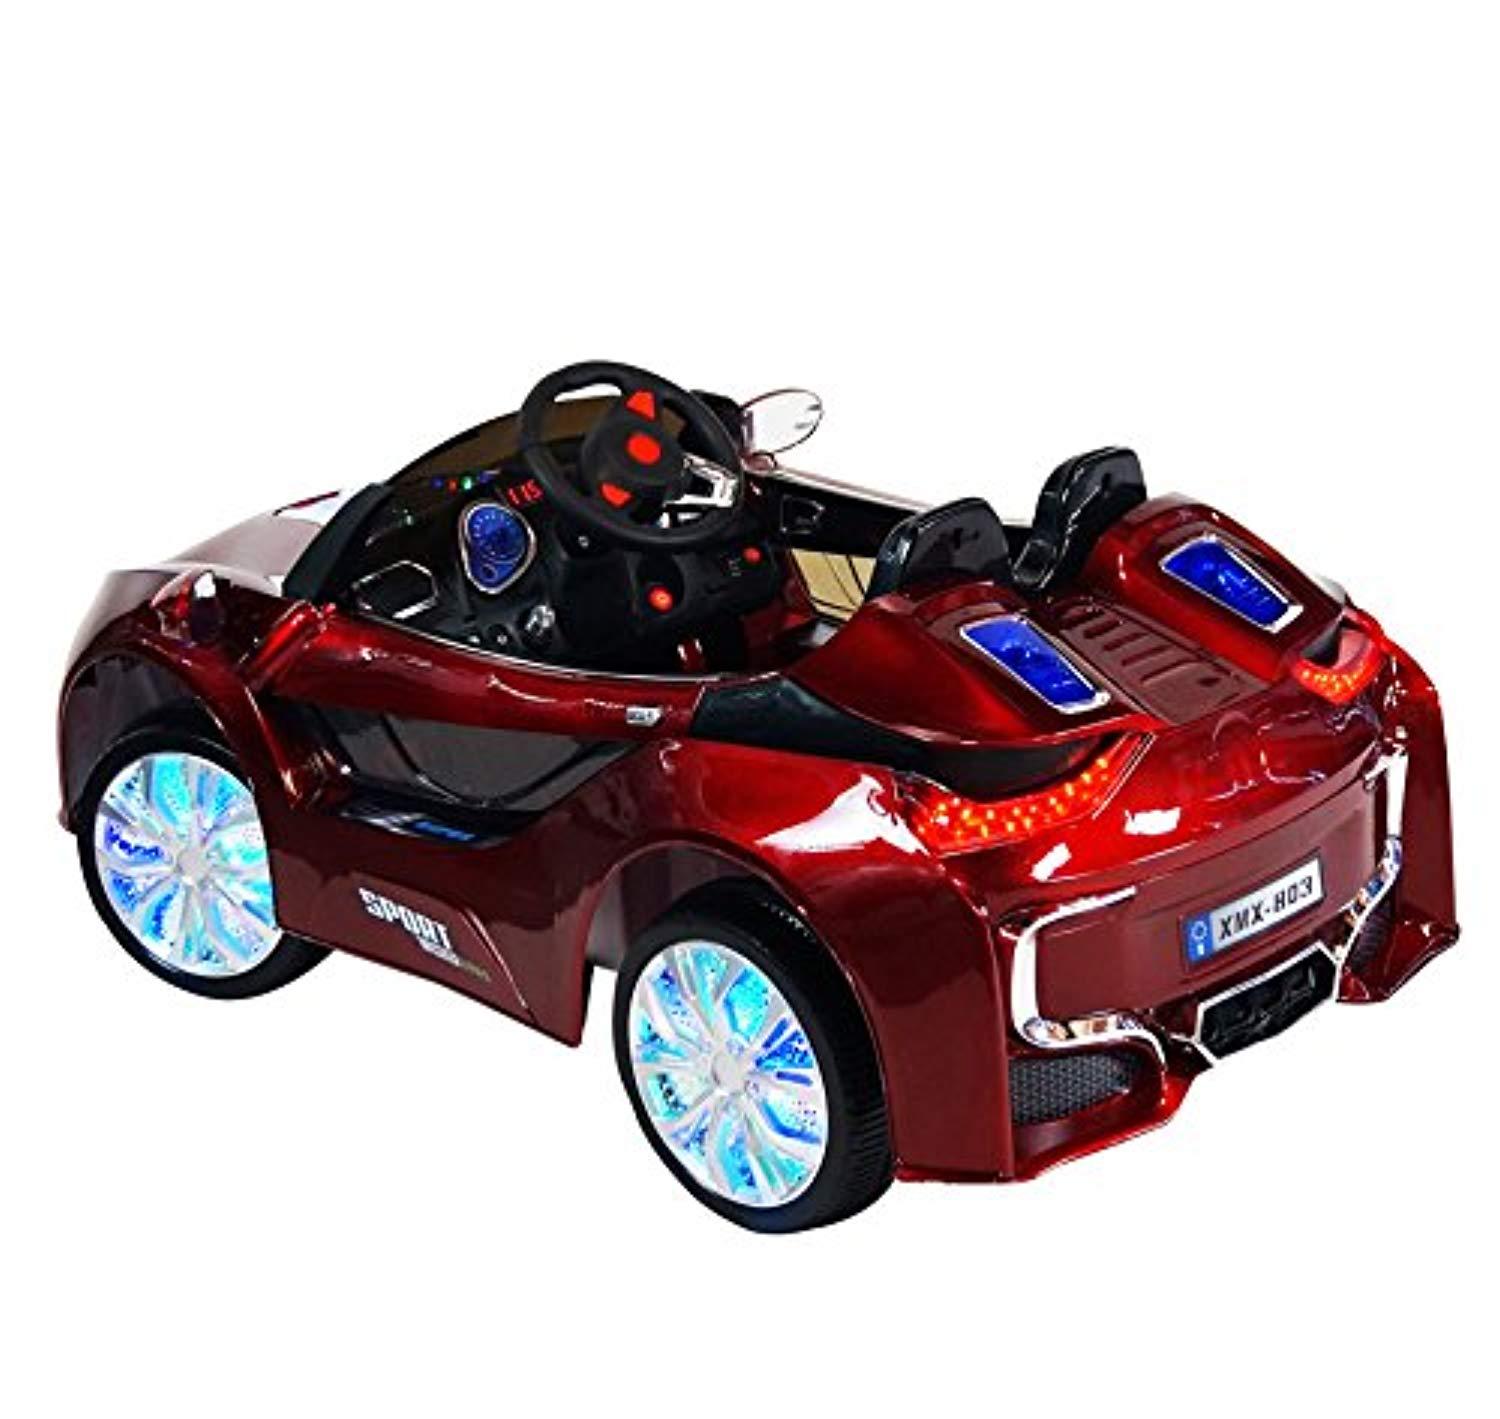 a toy car